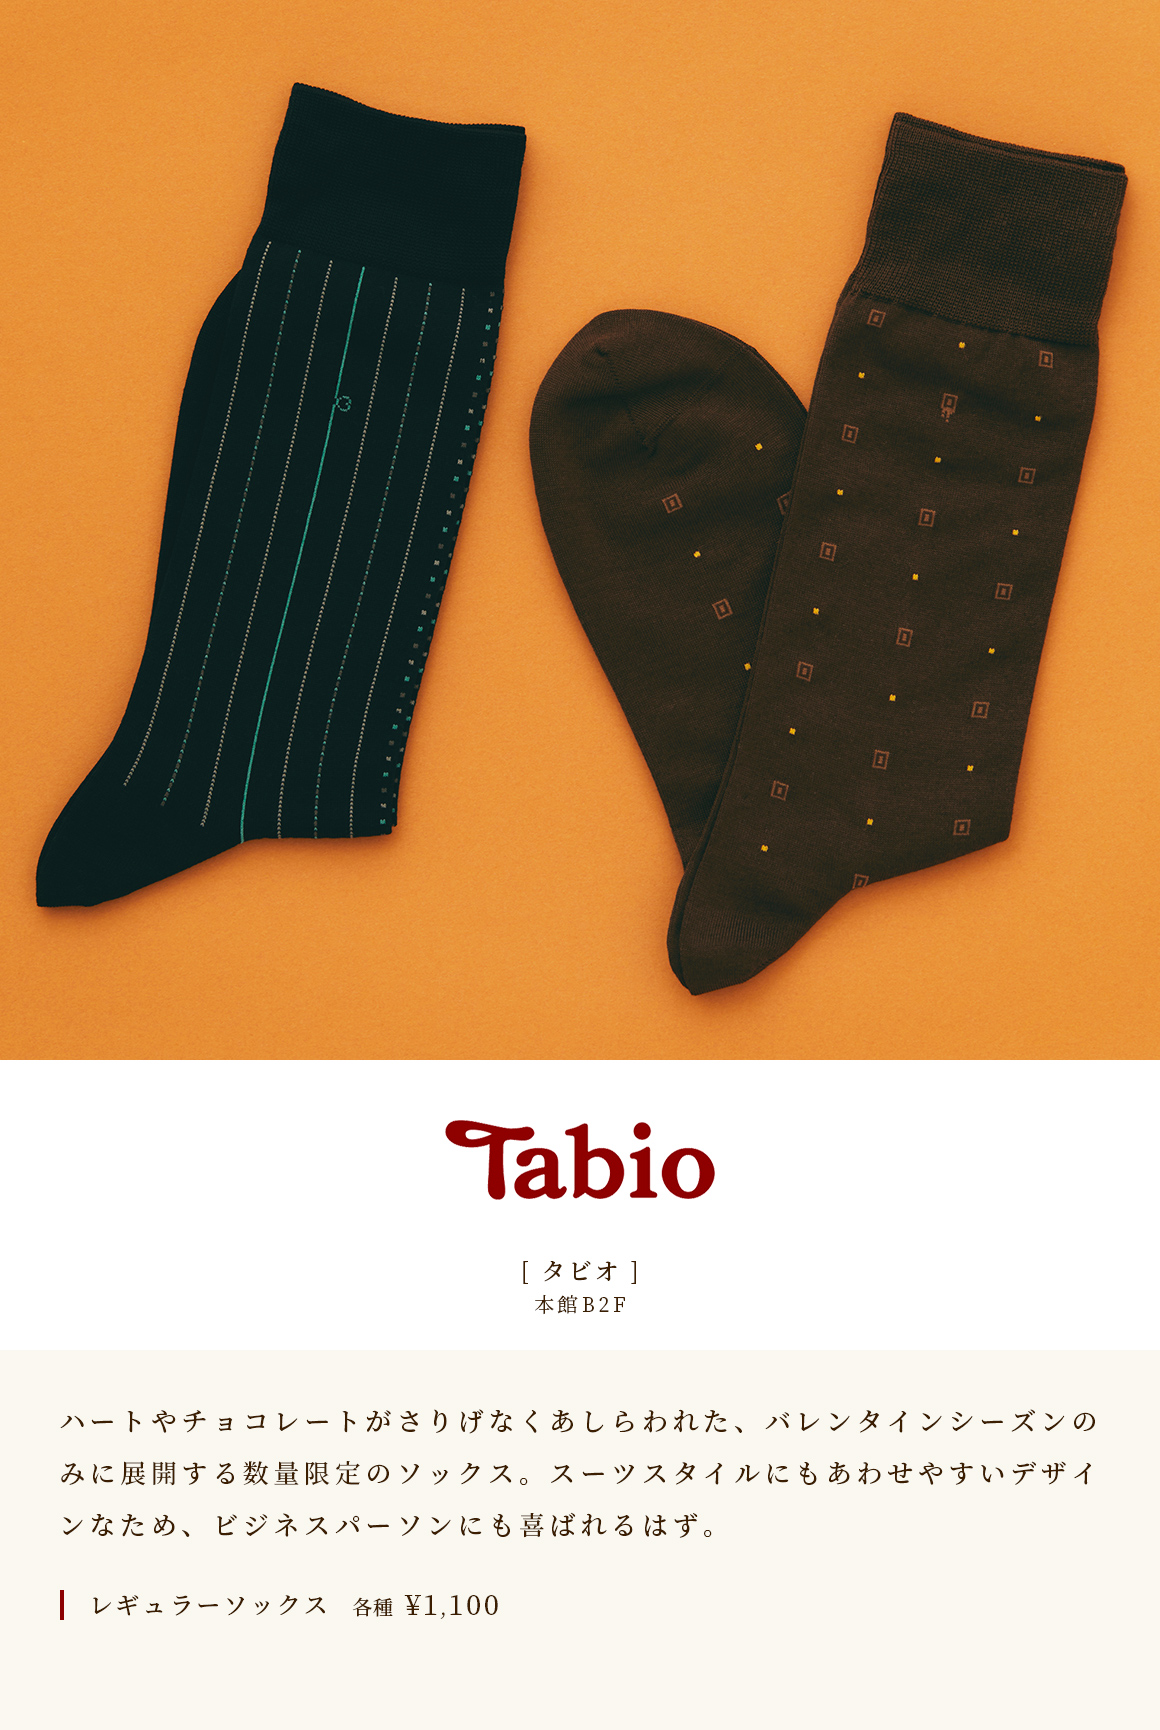 [Tabio] Main Building B2F 情人節限定的愛心襪子和巧克力限定商品。設計易於搭配西裝款式，值得商務人士欣賞。各種普通襪子￥1,100